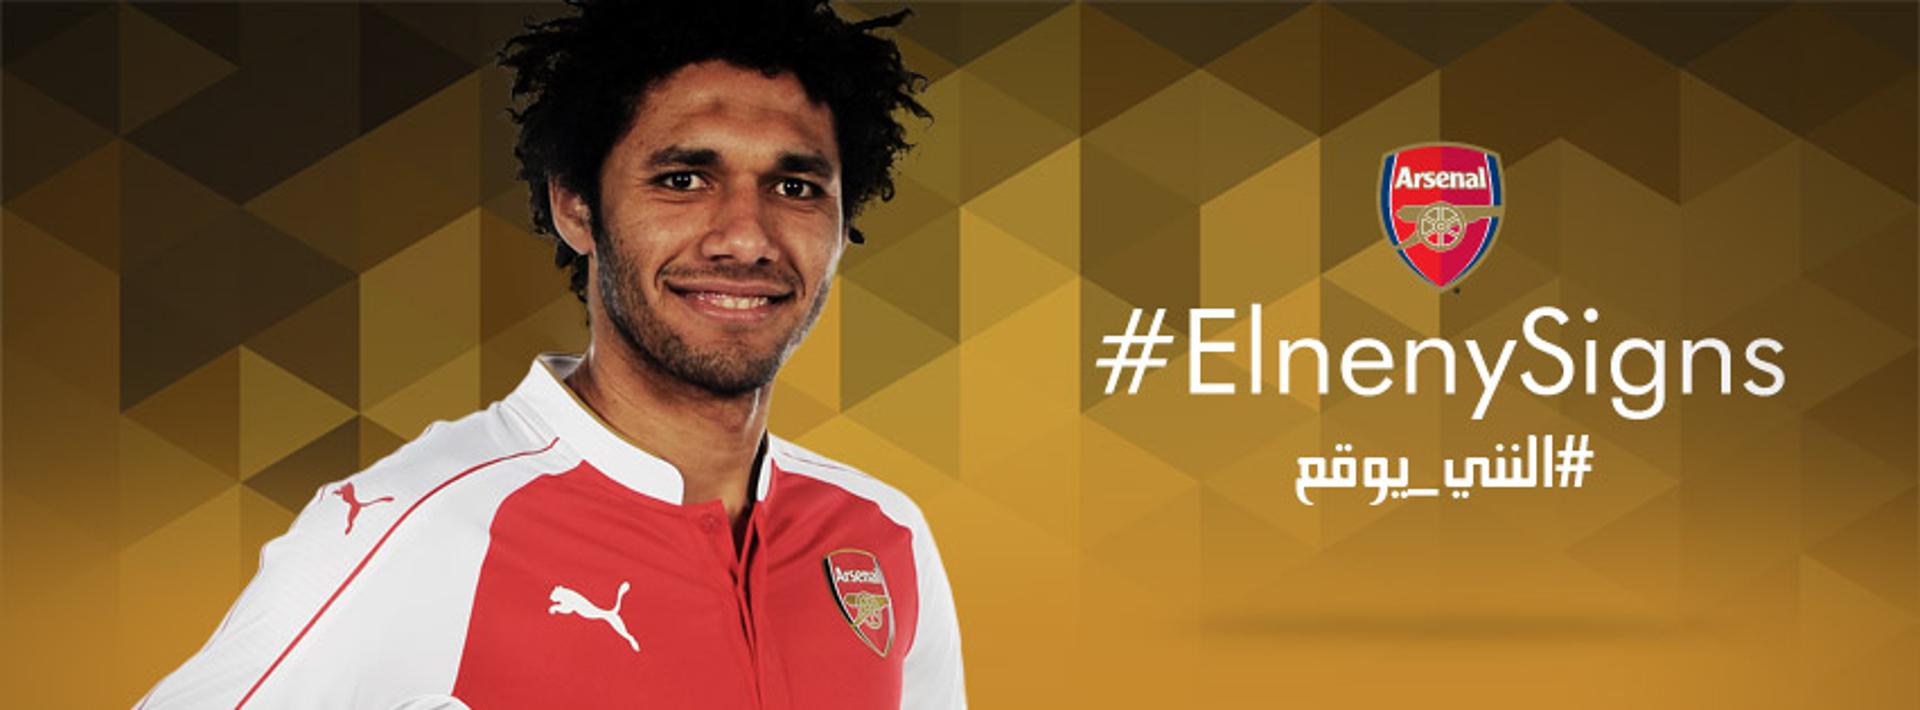 Mohamed El-Neny - Arsenal (Foto: Reprodução / Facebook)